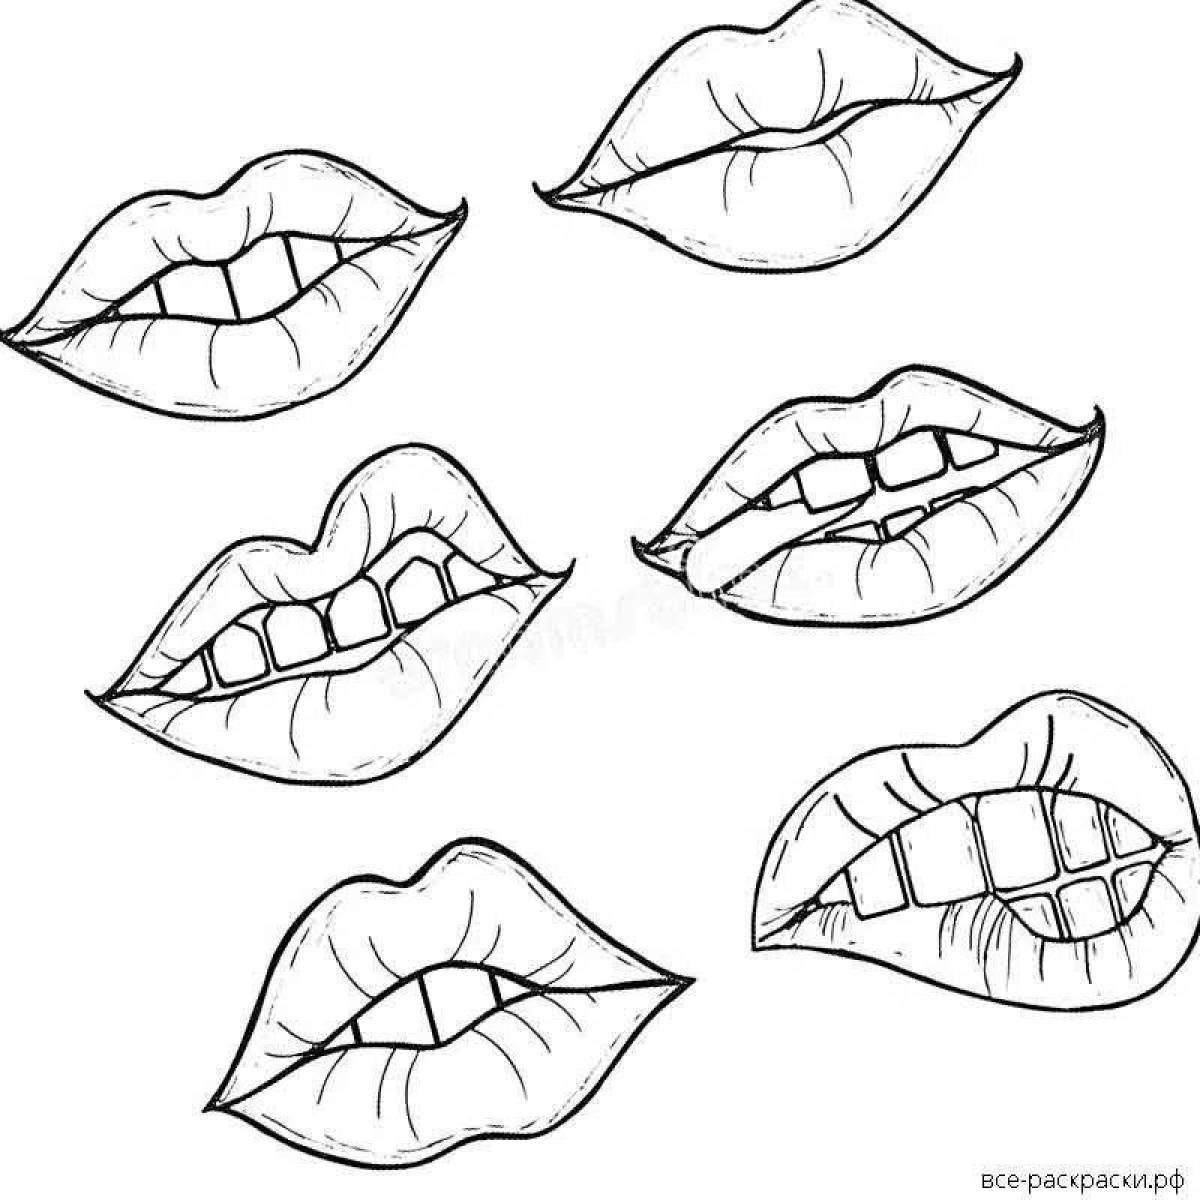 Fascinating lip pattern